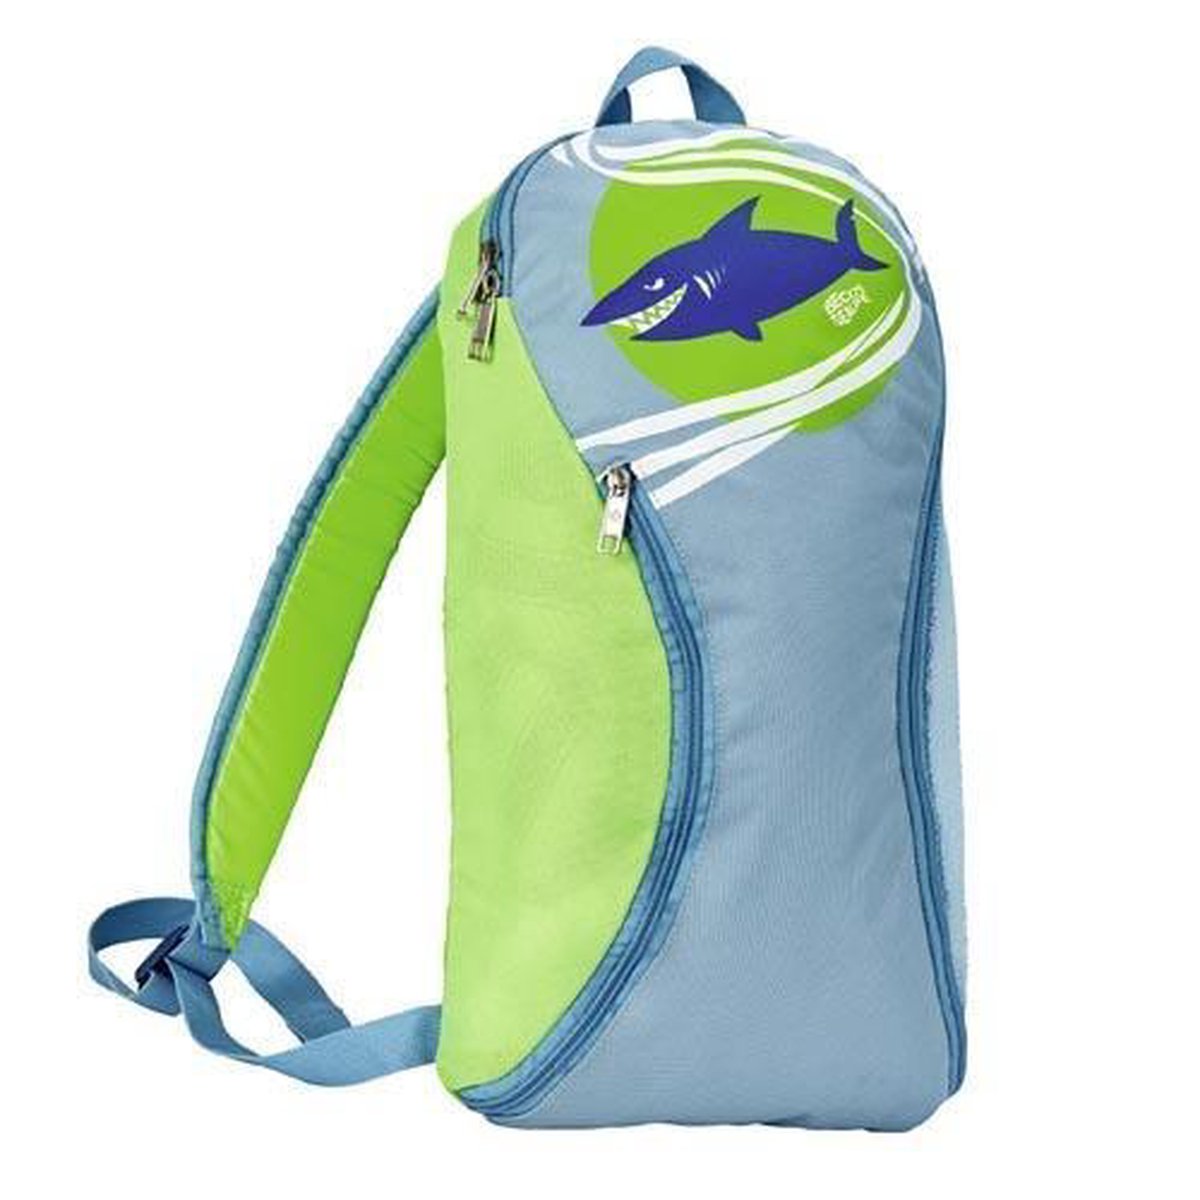 BECO-SEALIFE rugtas voor zwemspullen - zwemtas - blauw/groen - BECO